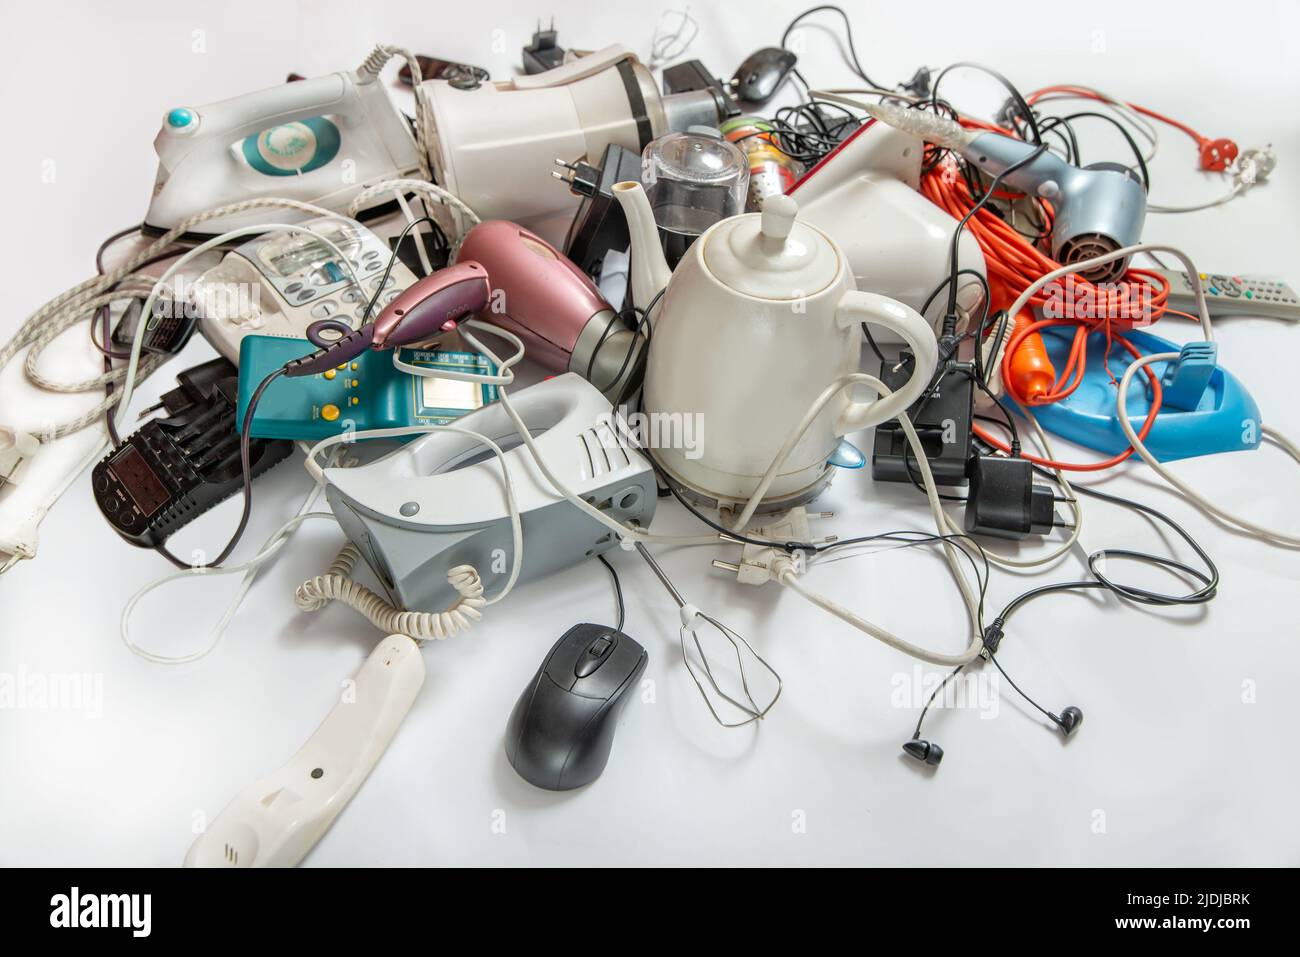 Muchos electrodomésticos viejos para reciclar residuos electrónicos. Concepto de vida sostenible. Foto de stock